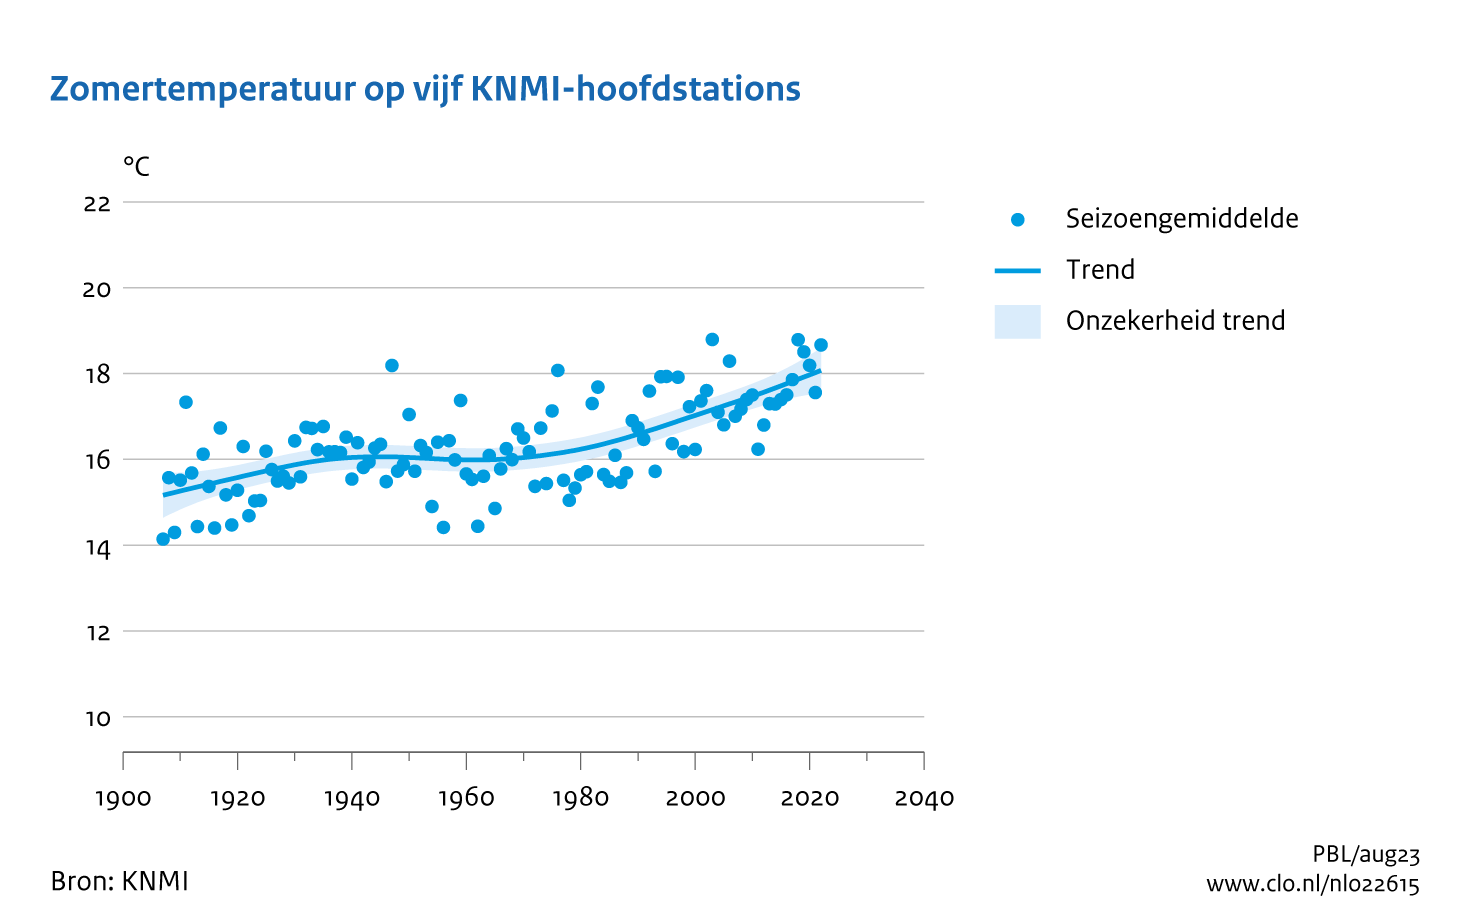 Figuur zomer temperatuur midden Nederland. In de rest van de tekst wordt deze figuur uitgebreider uitgelegd.